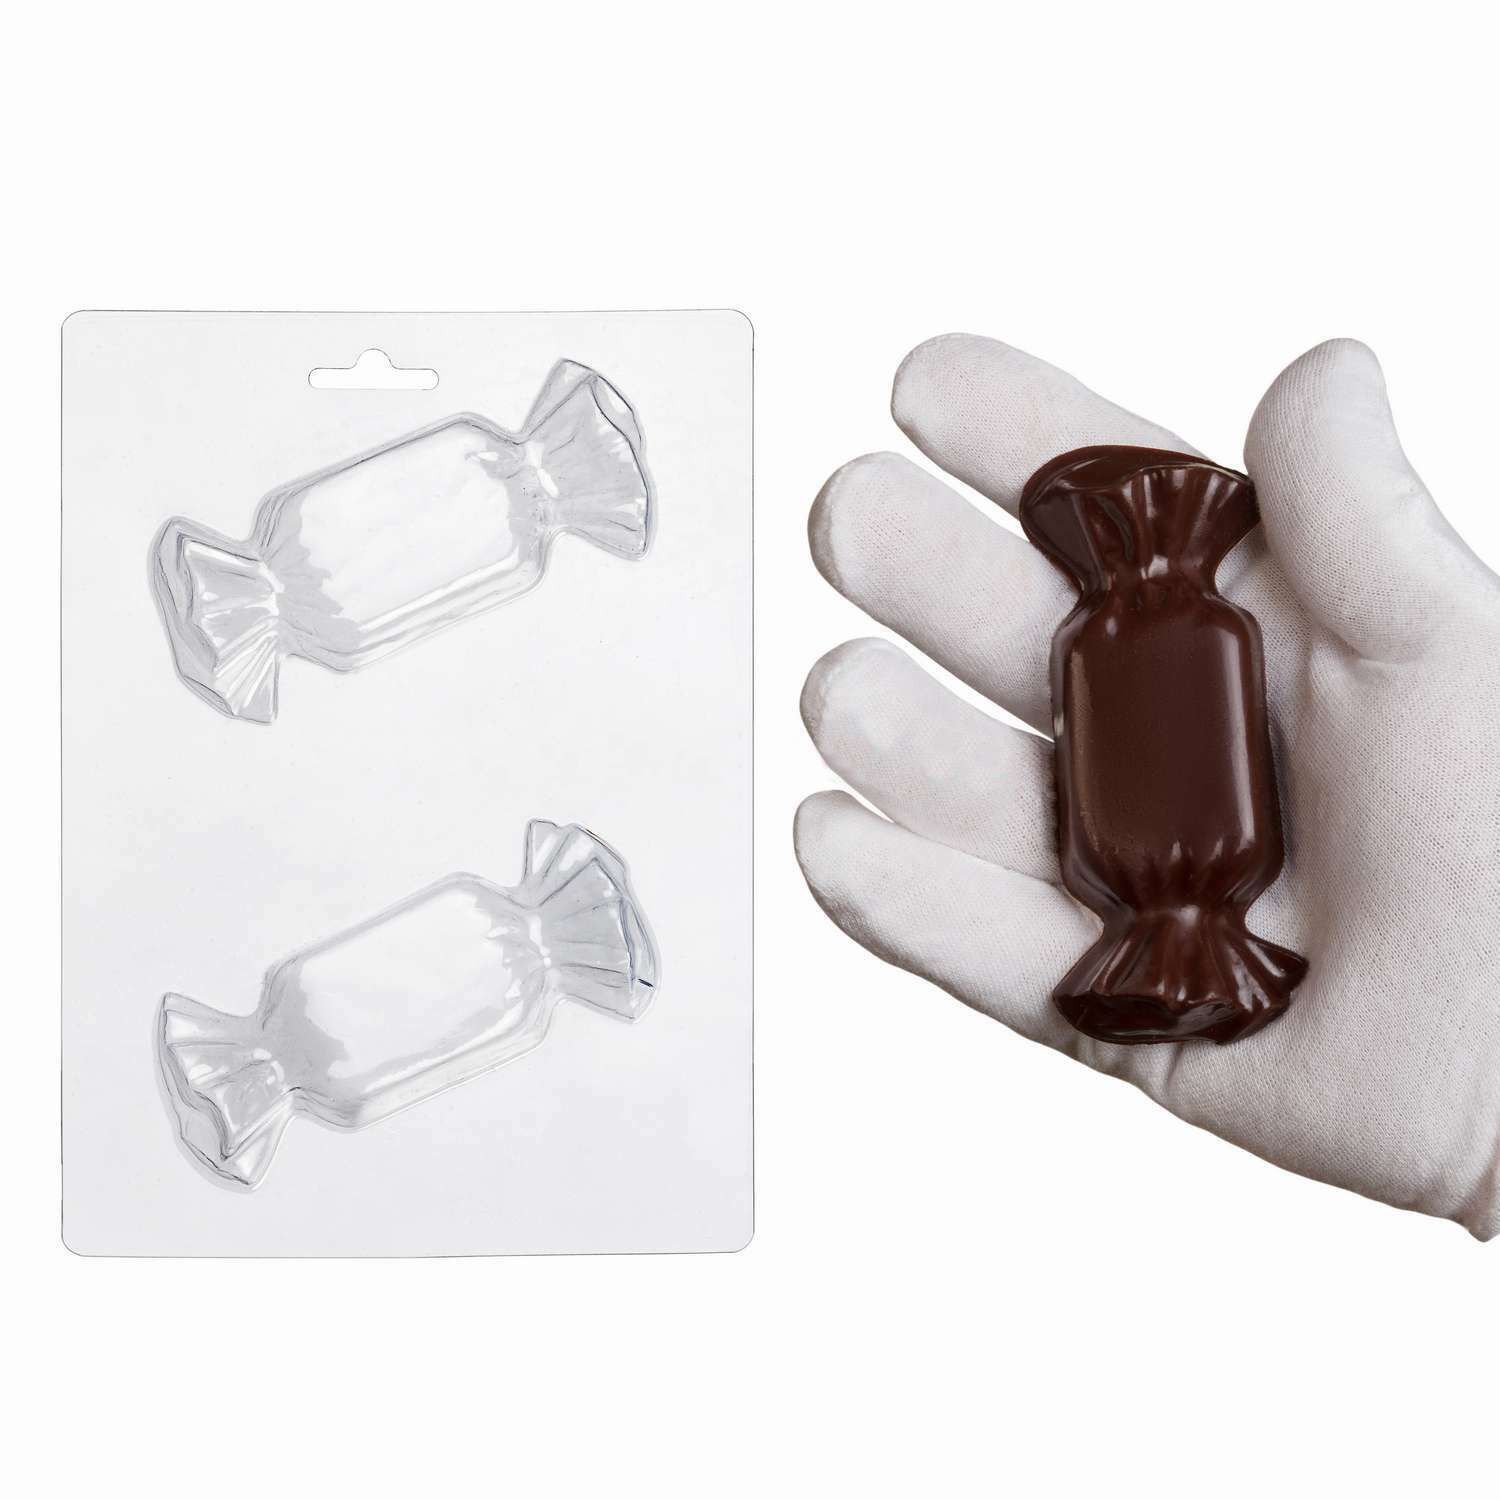 ⋗ Пластиковая форма для шоколада Конфета большая купить в Украине ➛ CakeShop.com.ua, фото